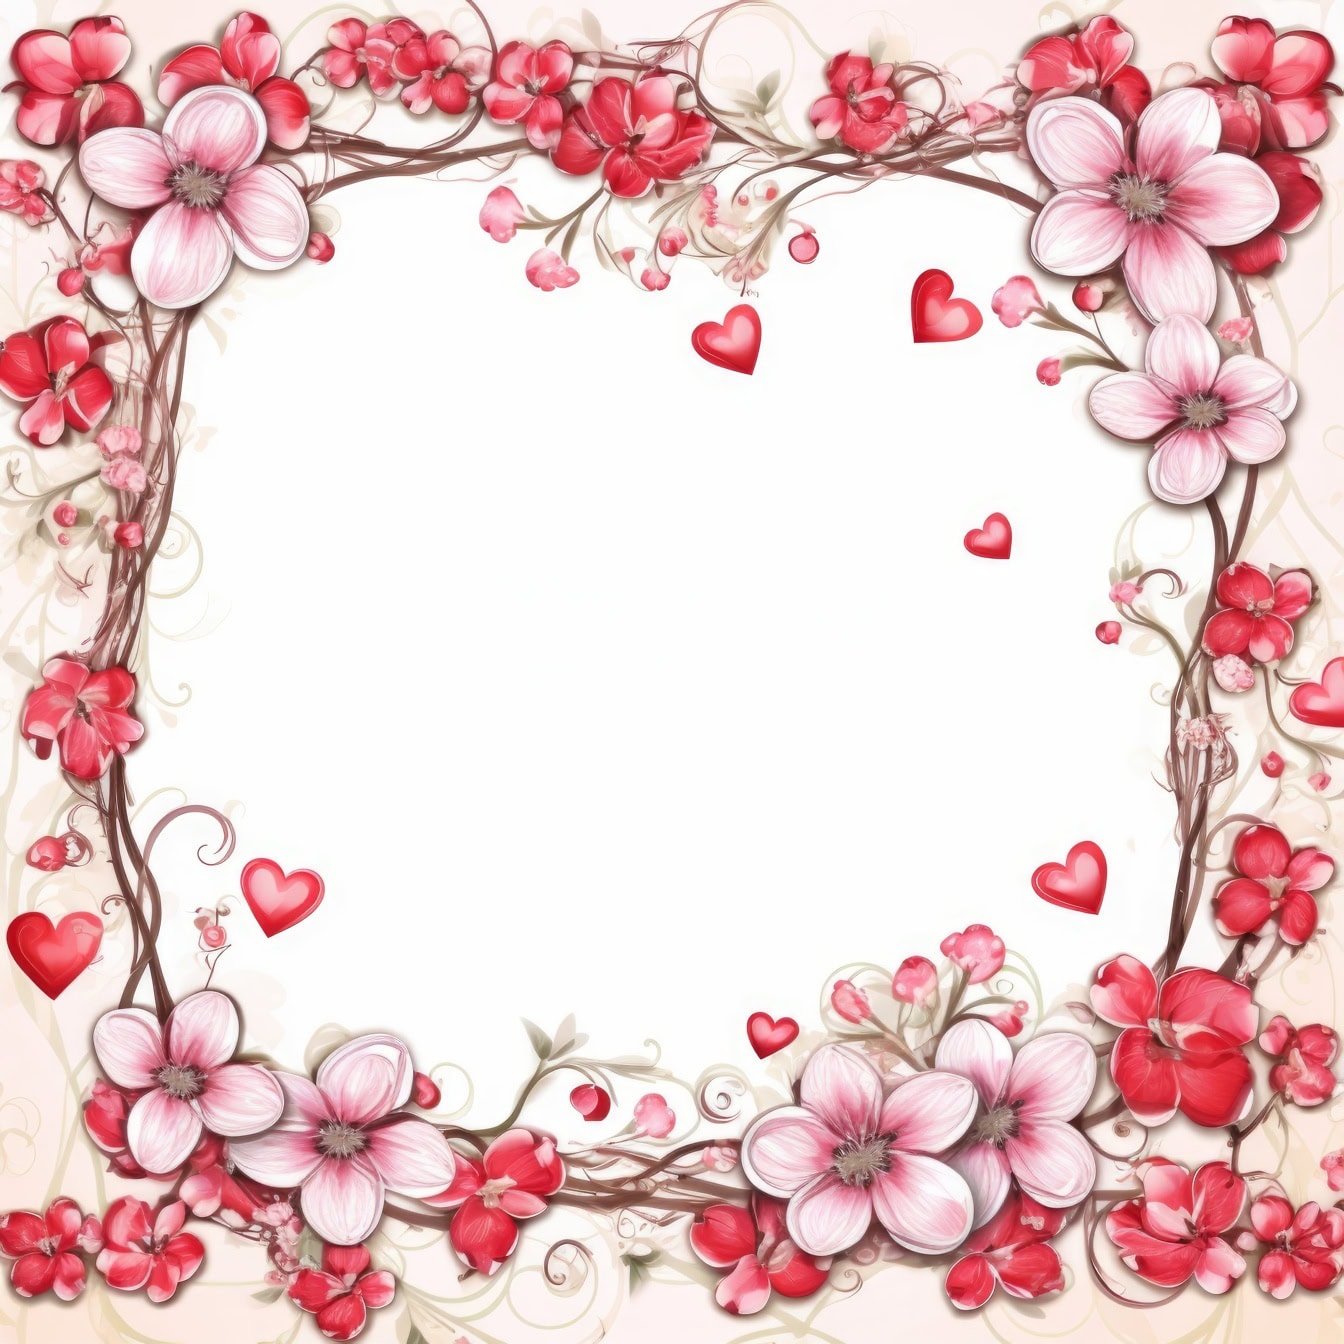 Modèle de carte de voeux romantique avec cadre de fleurs et de cœurs dans des tons rosés